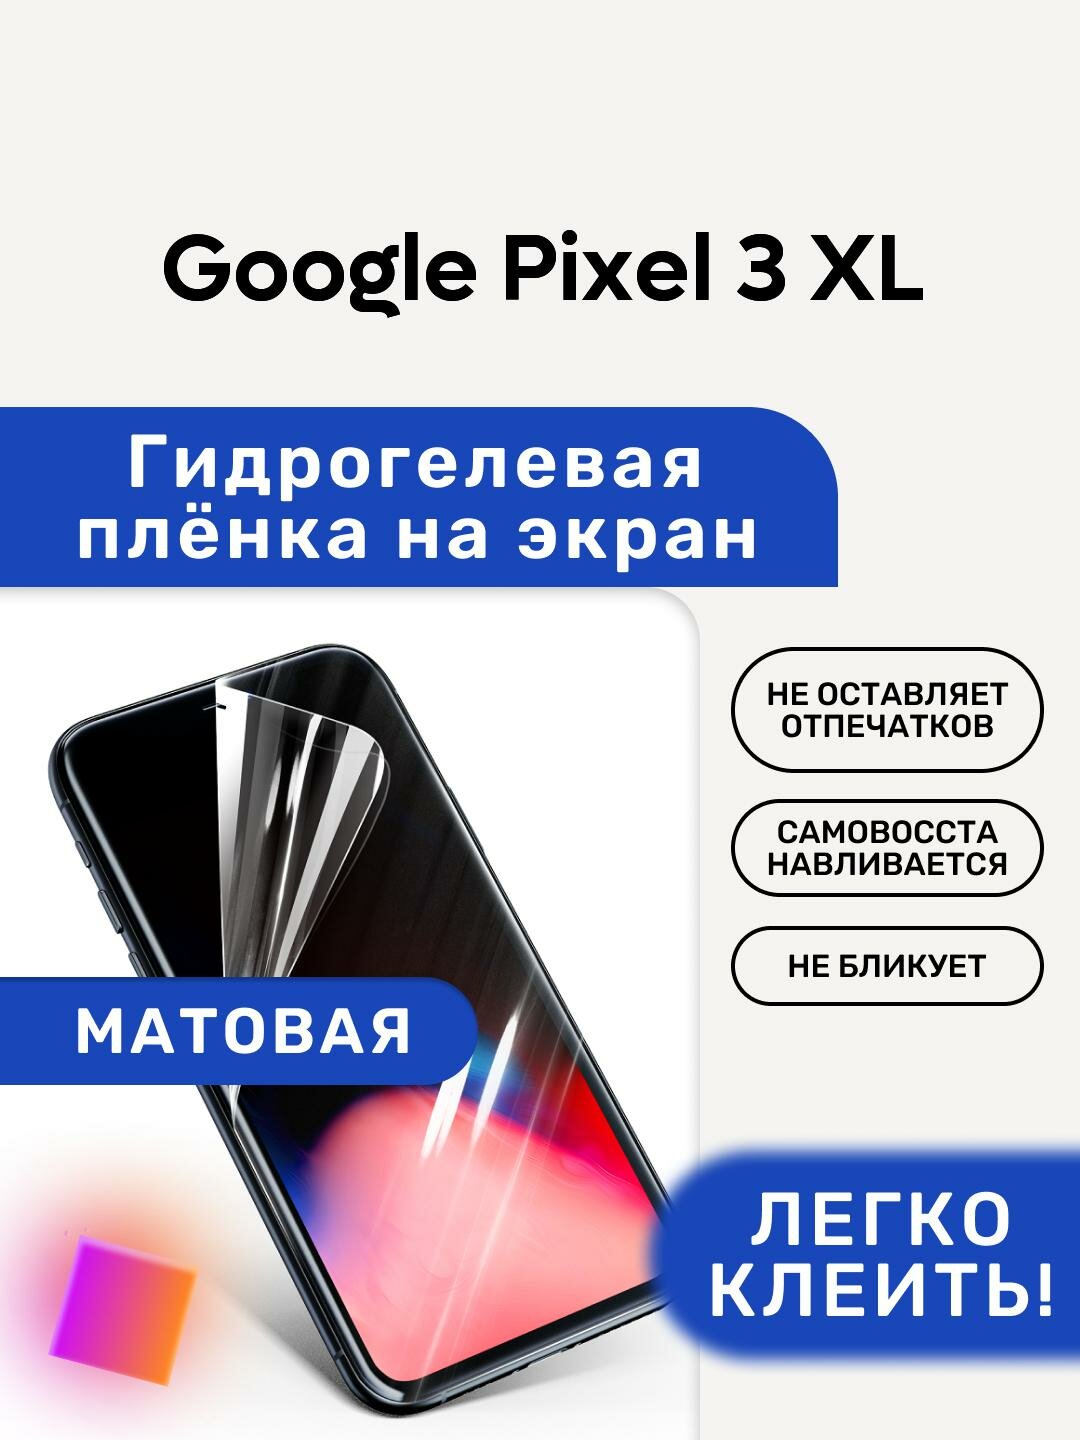 Матовая Гидрогелевая плёнка, полиуретановая, защита экрана Google Pixel 3 XL